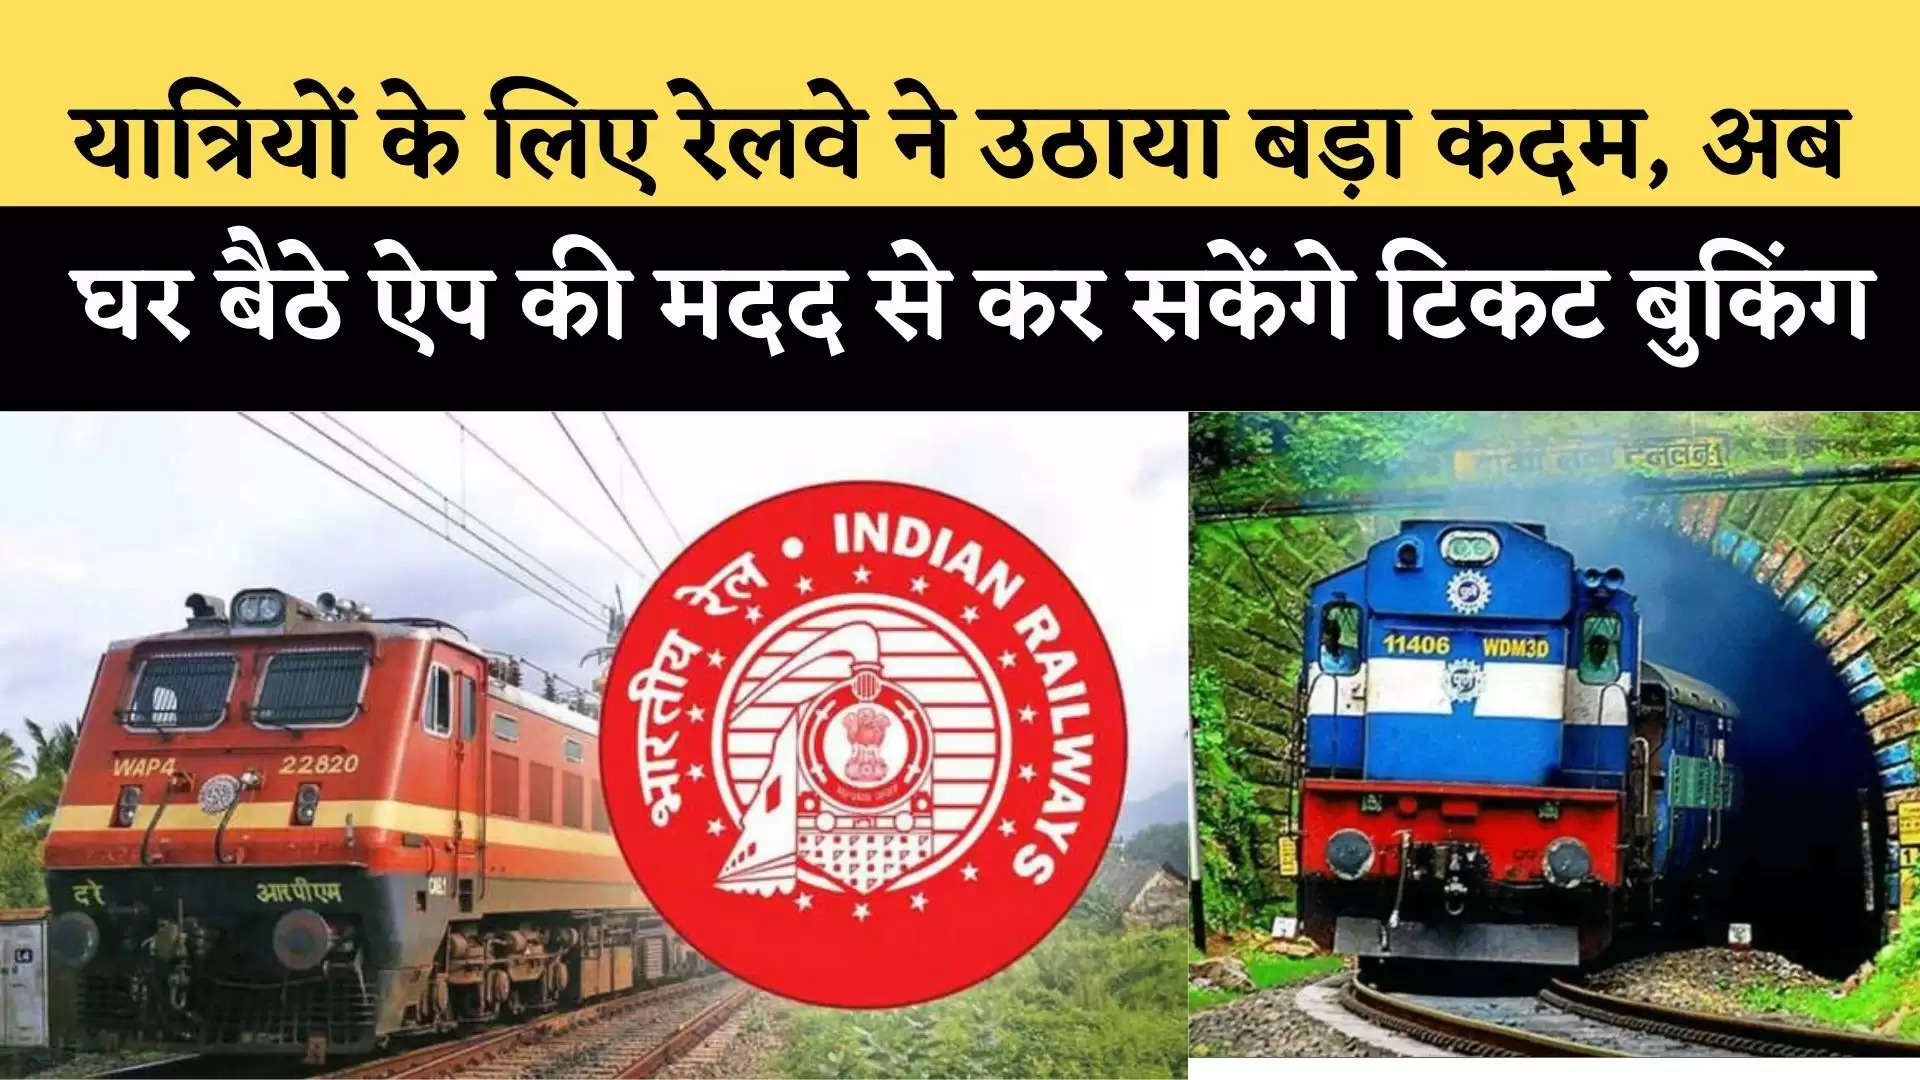 Indian Railway: यात्रियों के लिए रेलवे ने उठाया बड़ा कदम, अब घर बैठे ऐप की मदद से कर सकेंगे टिकट बुकिंग